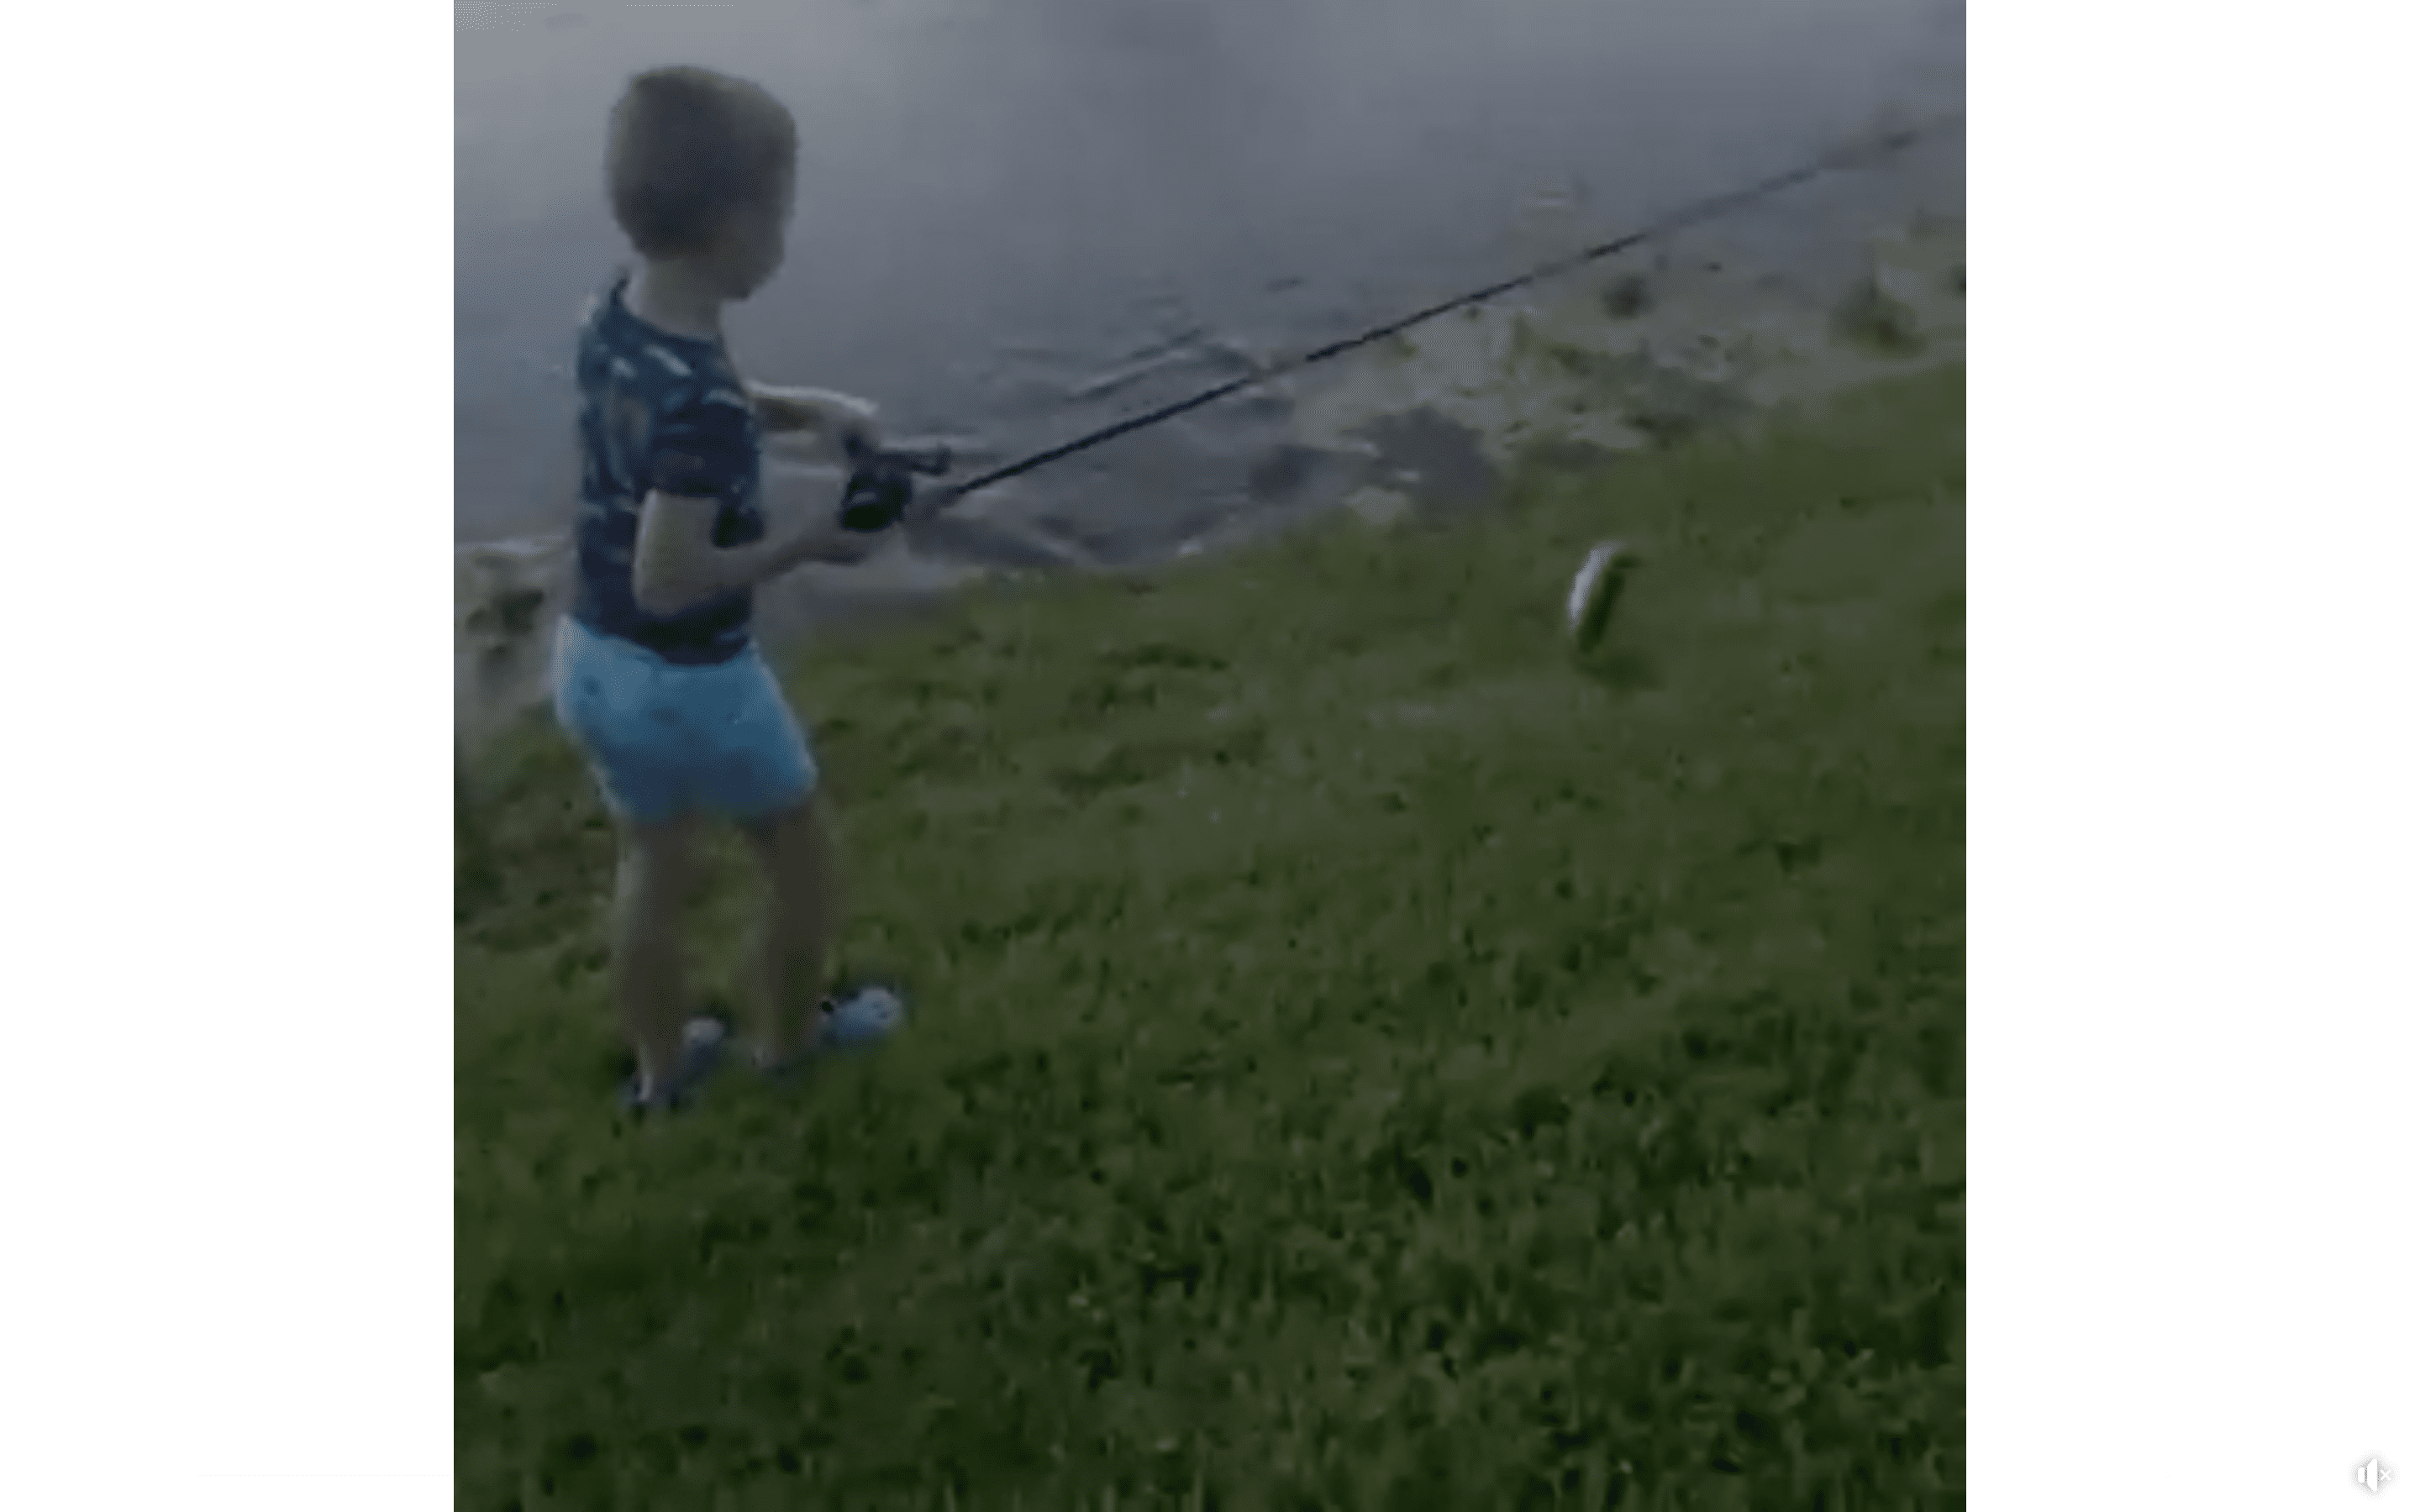 Sean McMahon jubelt seinem Sohn zu, als er einen Fisch fängt und an Land zieht. | Quelle: Facebook/Wesh2News